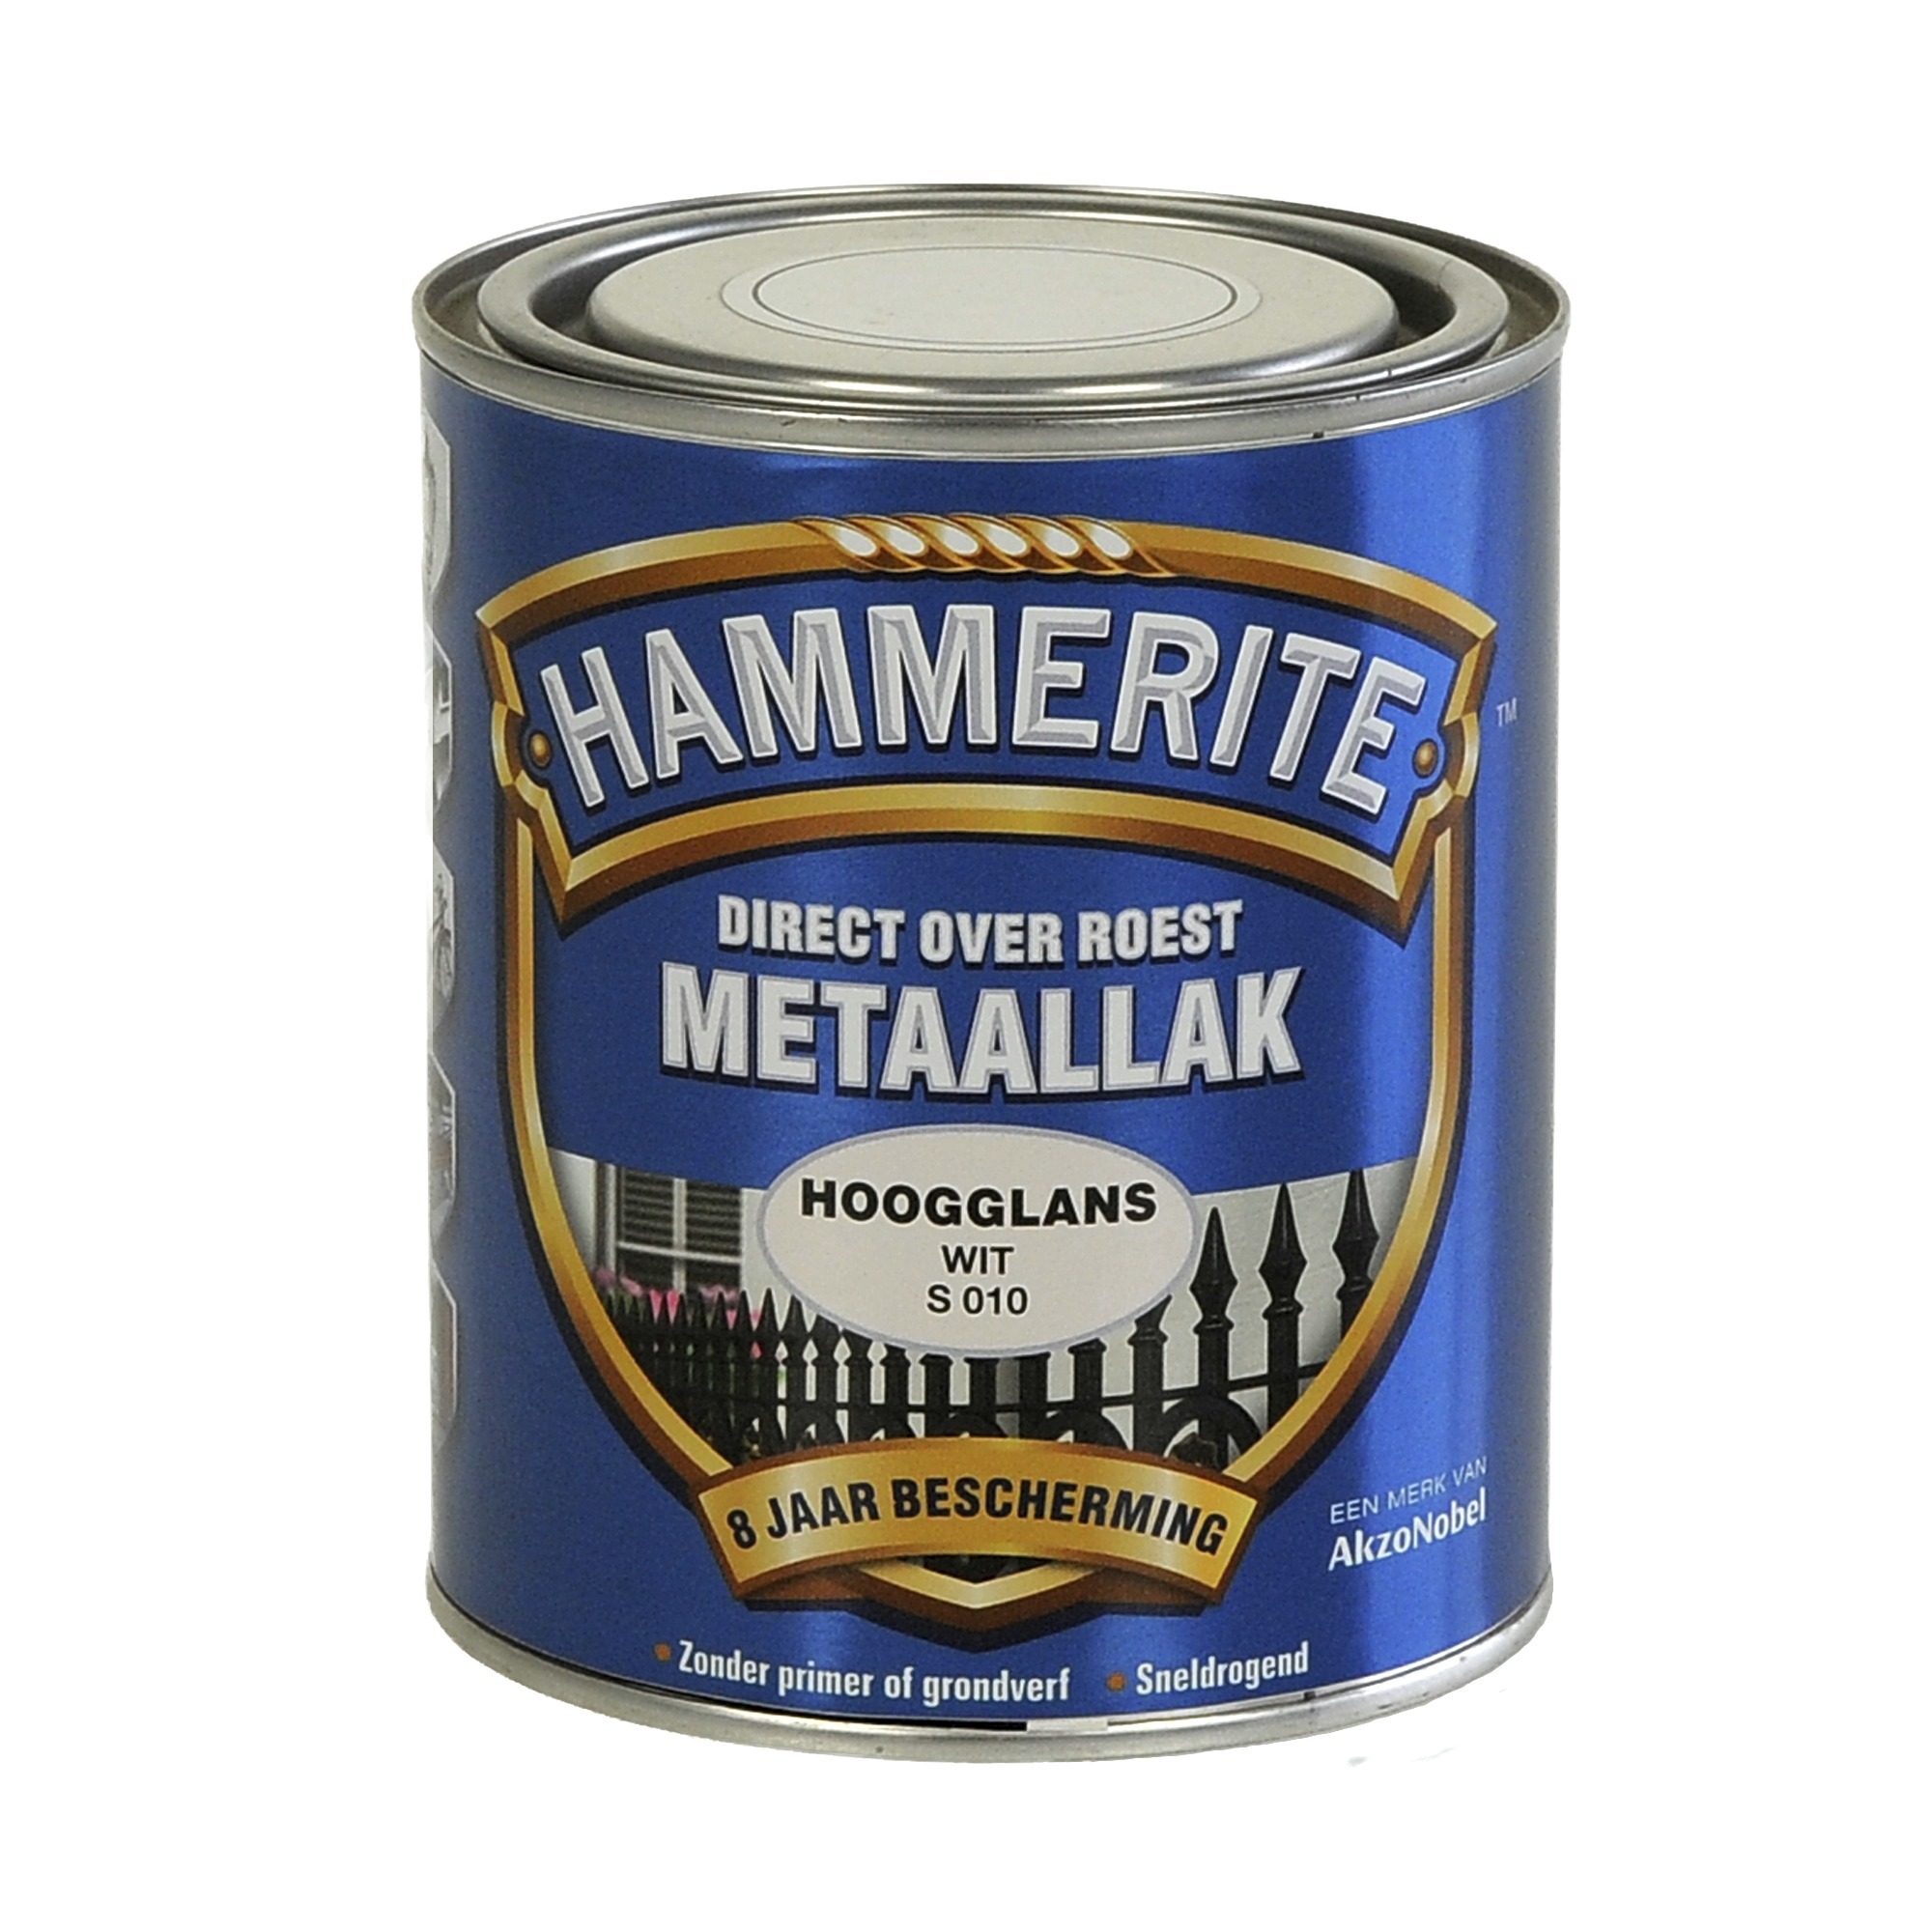 Hammerite direct over roest metaallak hoogglans wit - 750 ml